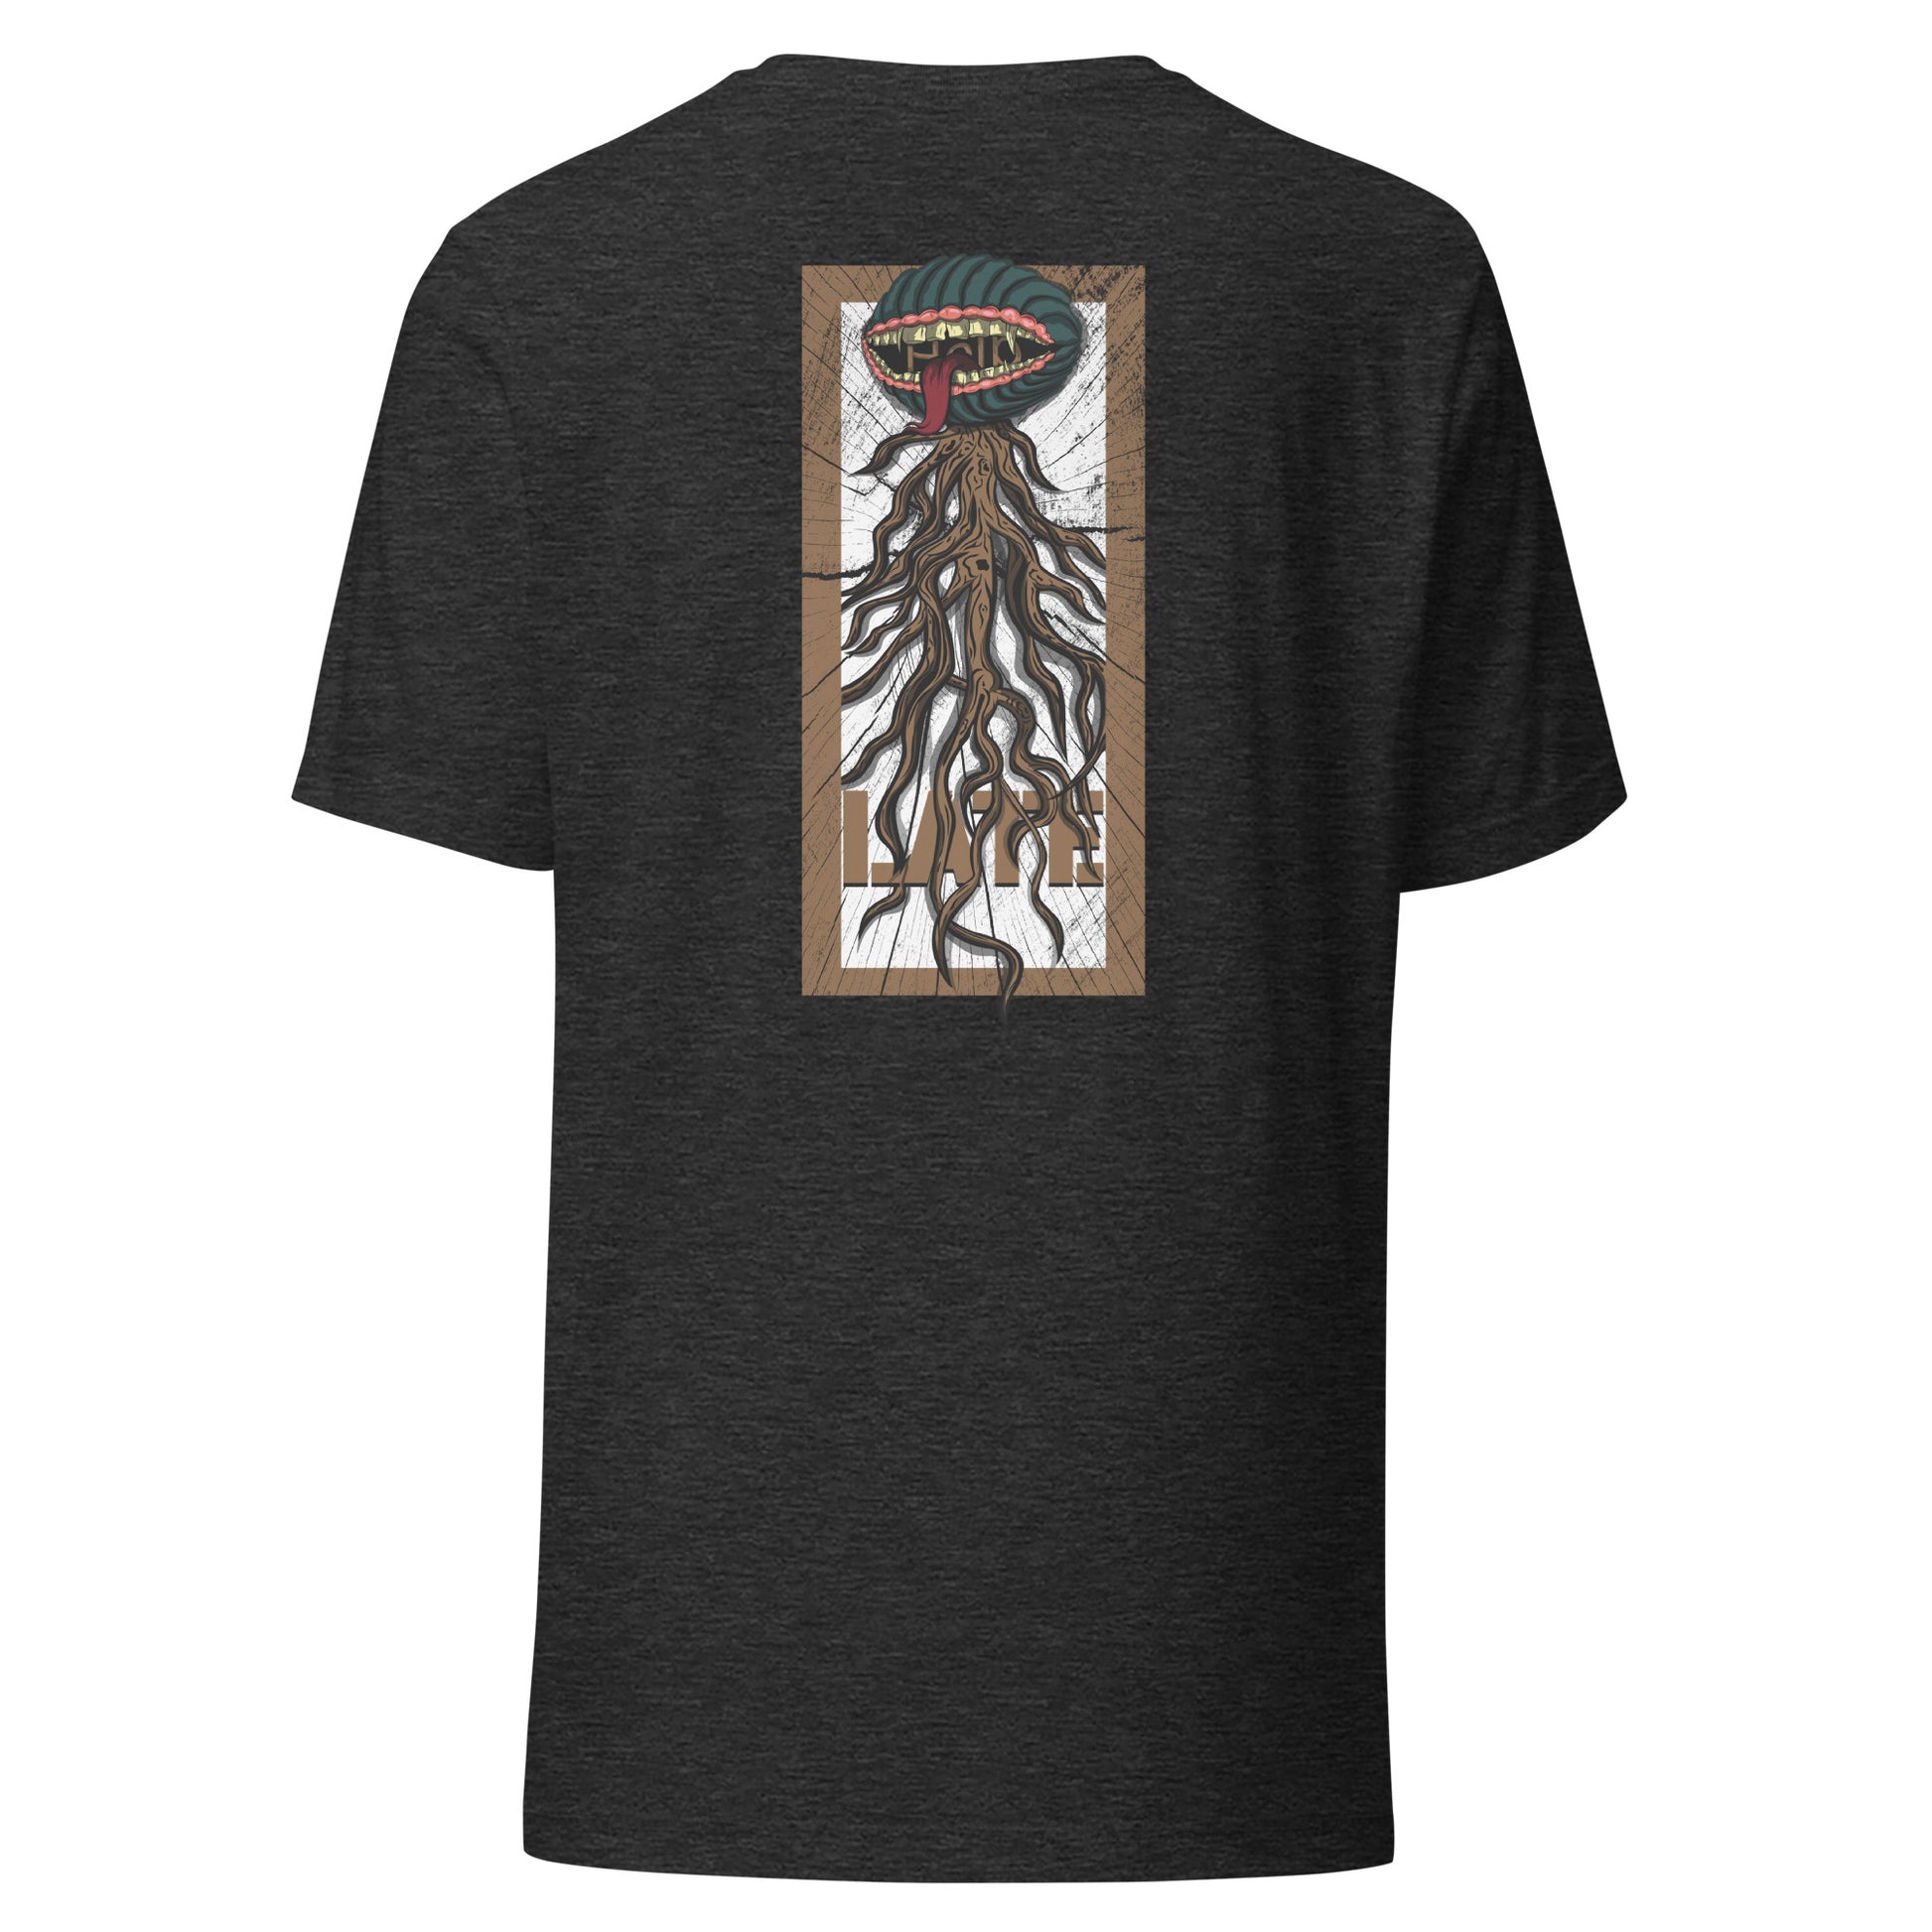 T-shirt style santacruz skateboarding plante carnivore effet bois tshirt unisex dos couleur gris foncé